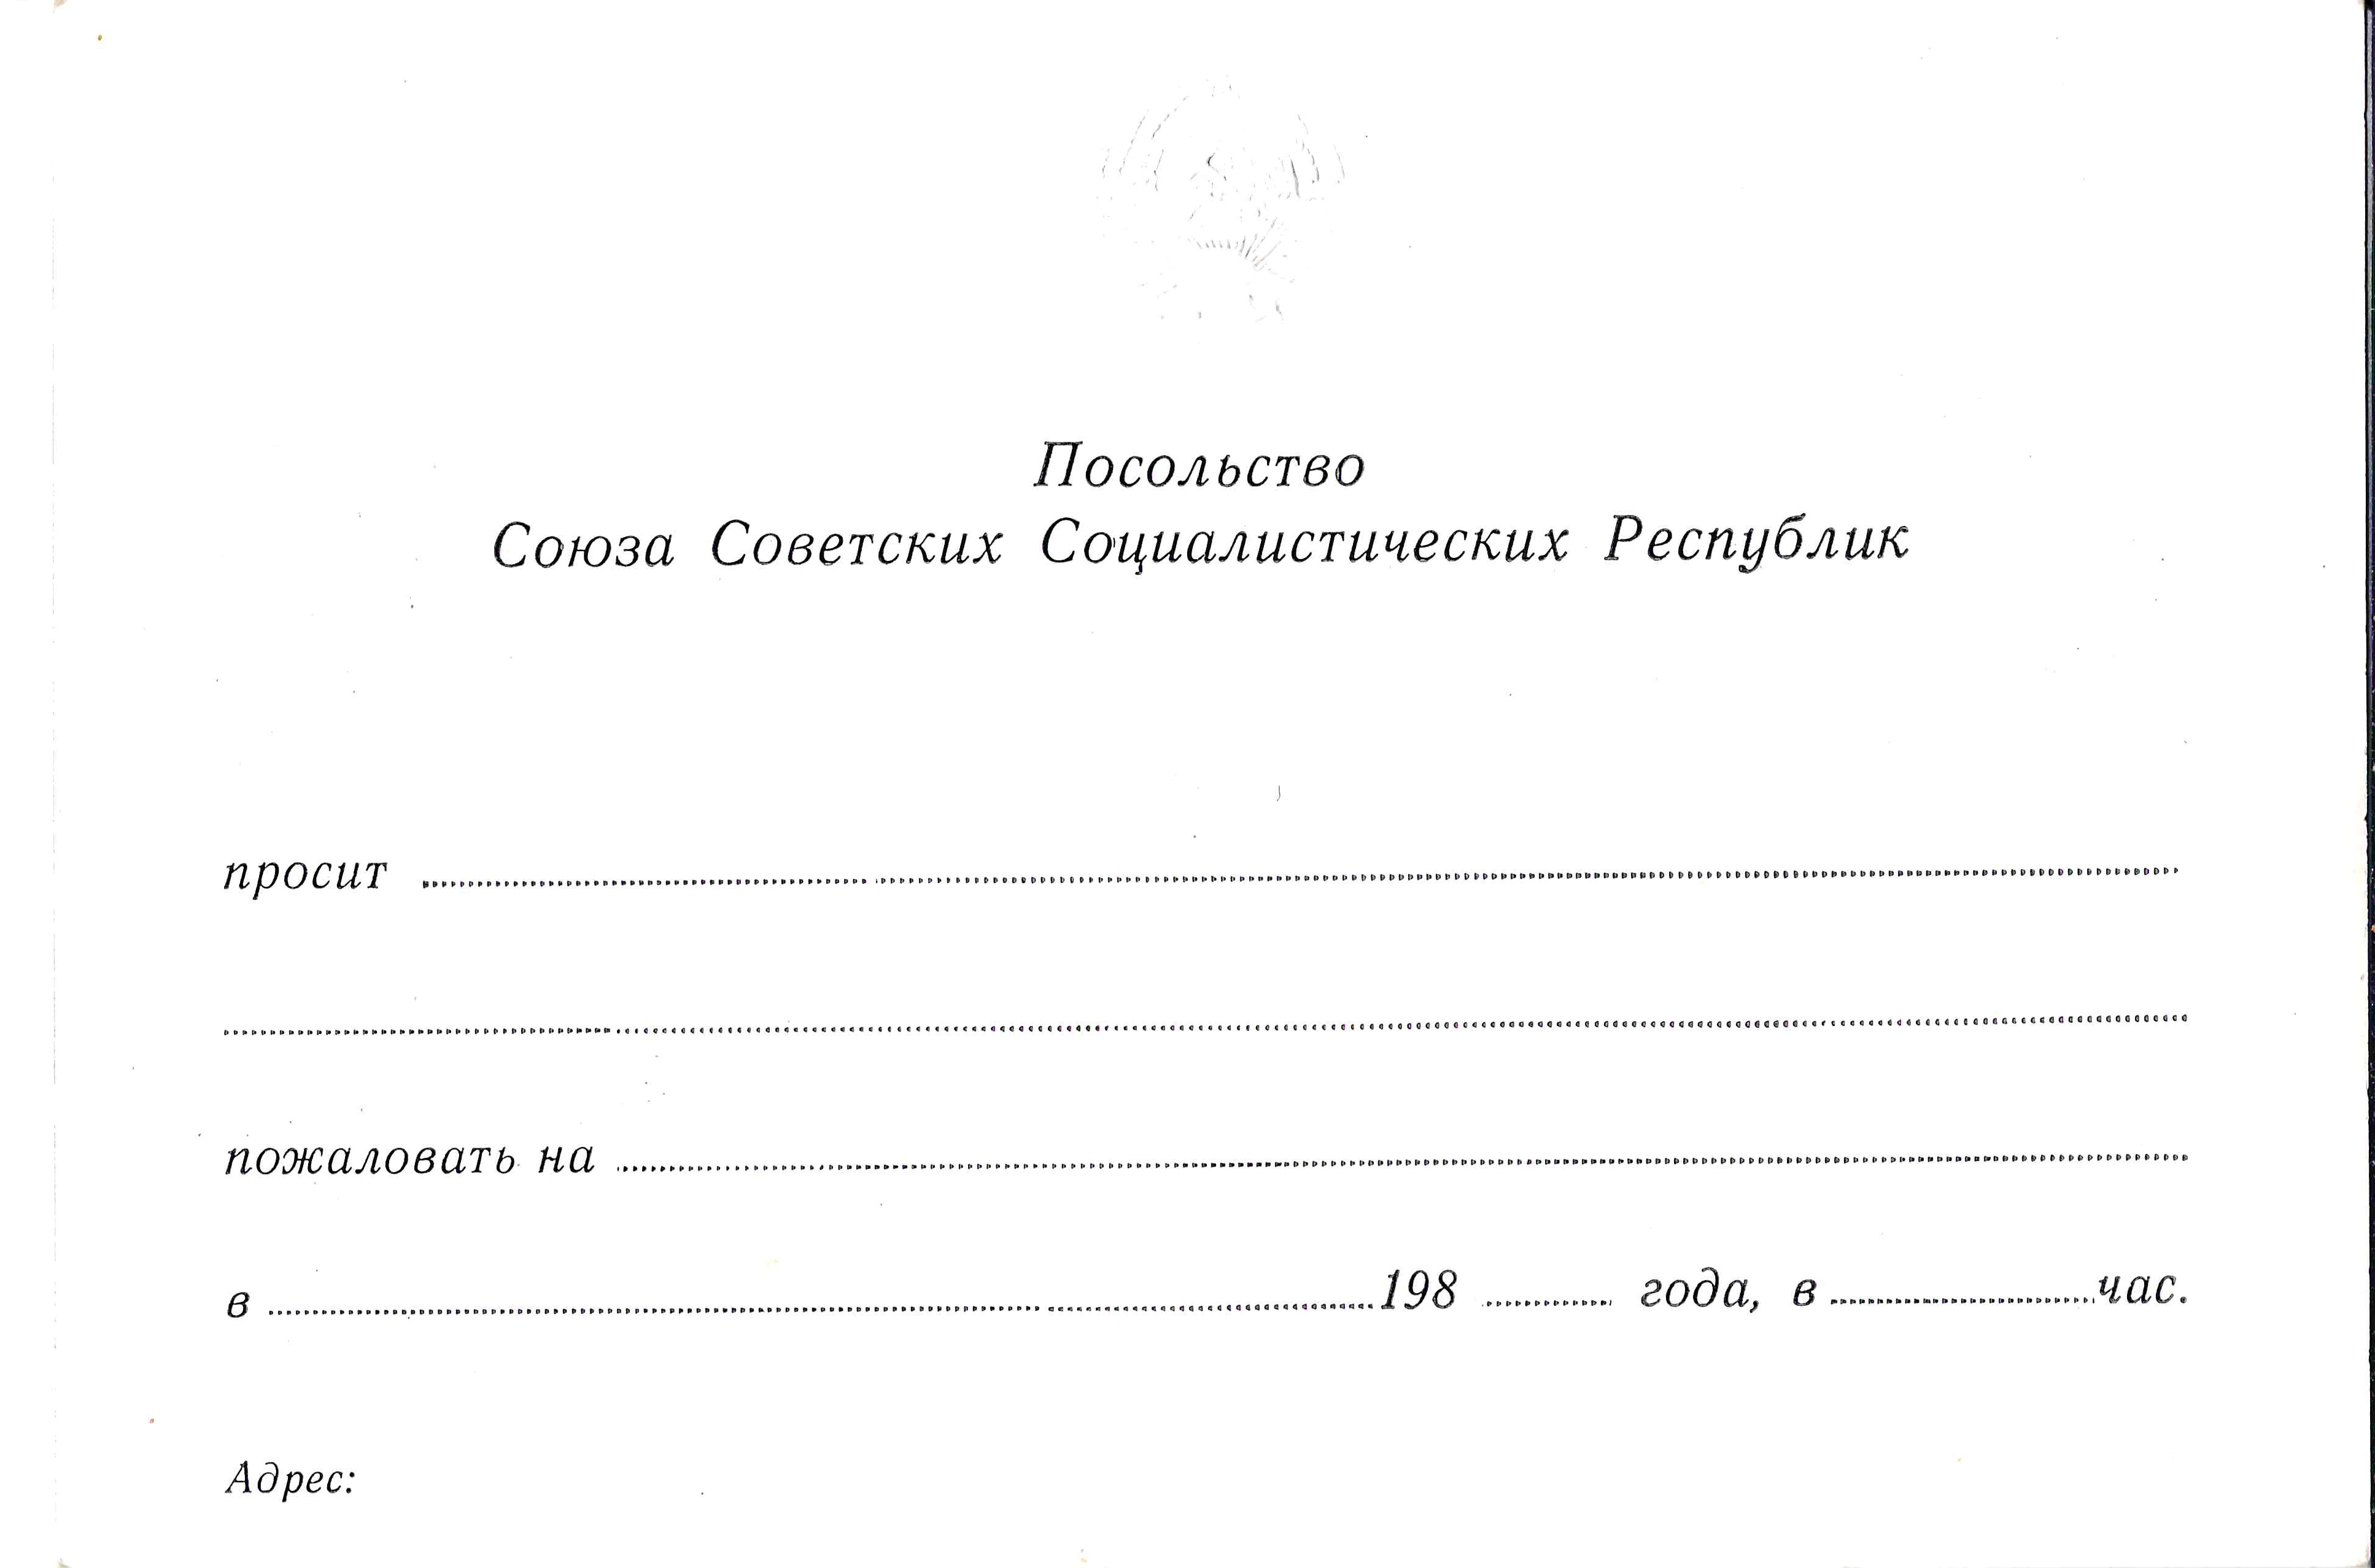 Бланк приглашения посольства СССР. 1980-е годы.